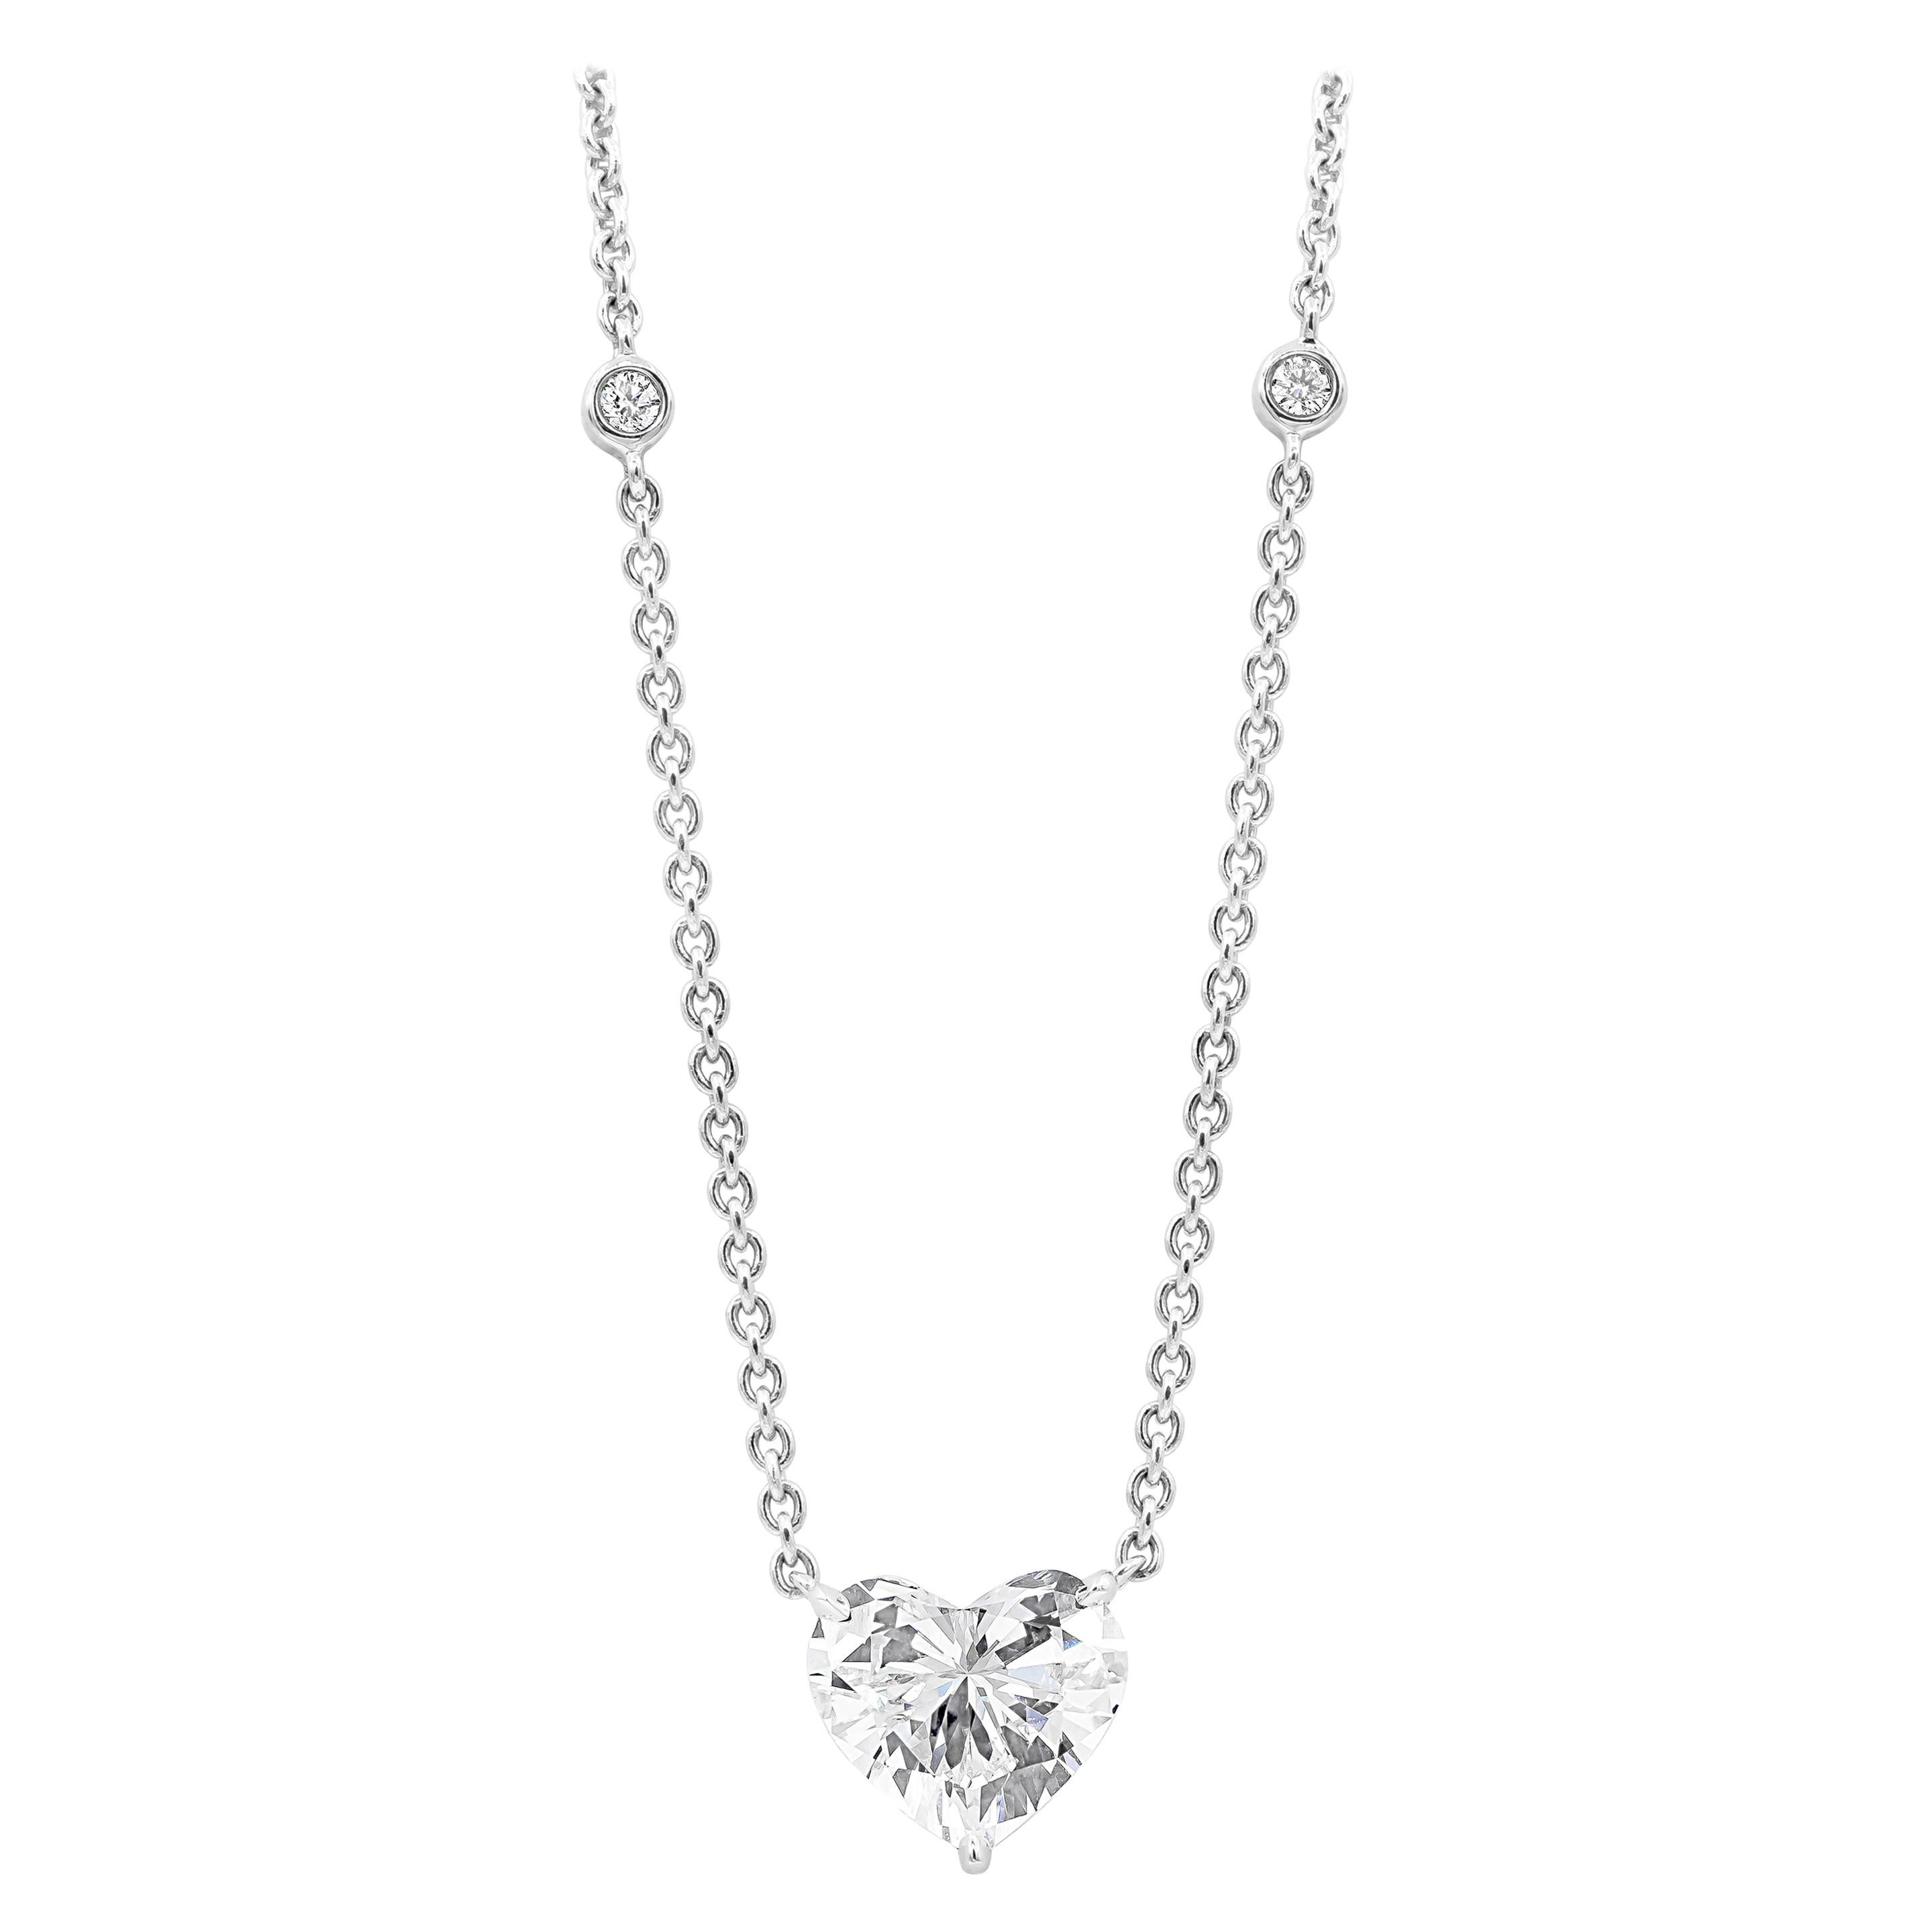 2.21 Carat Heart Shape Diamond Solitaire Pendant Necklace